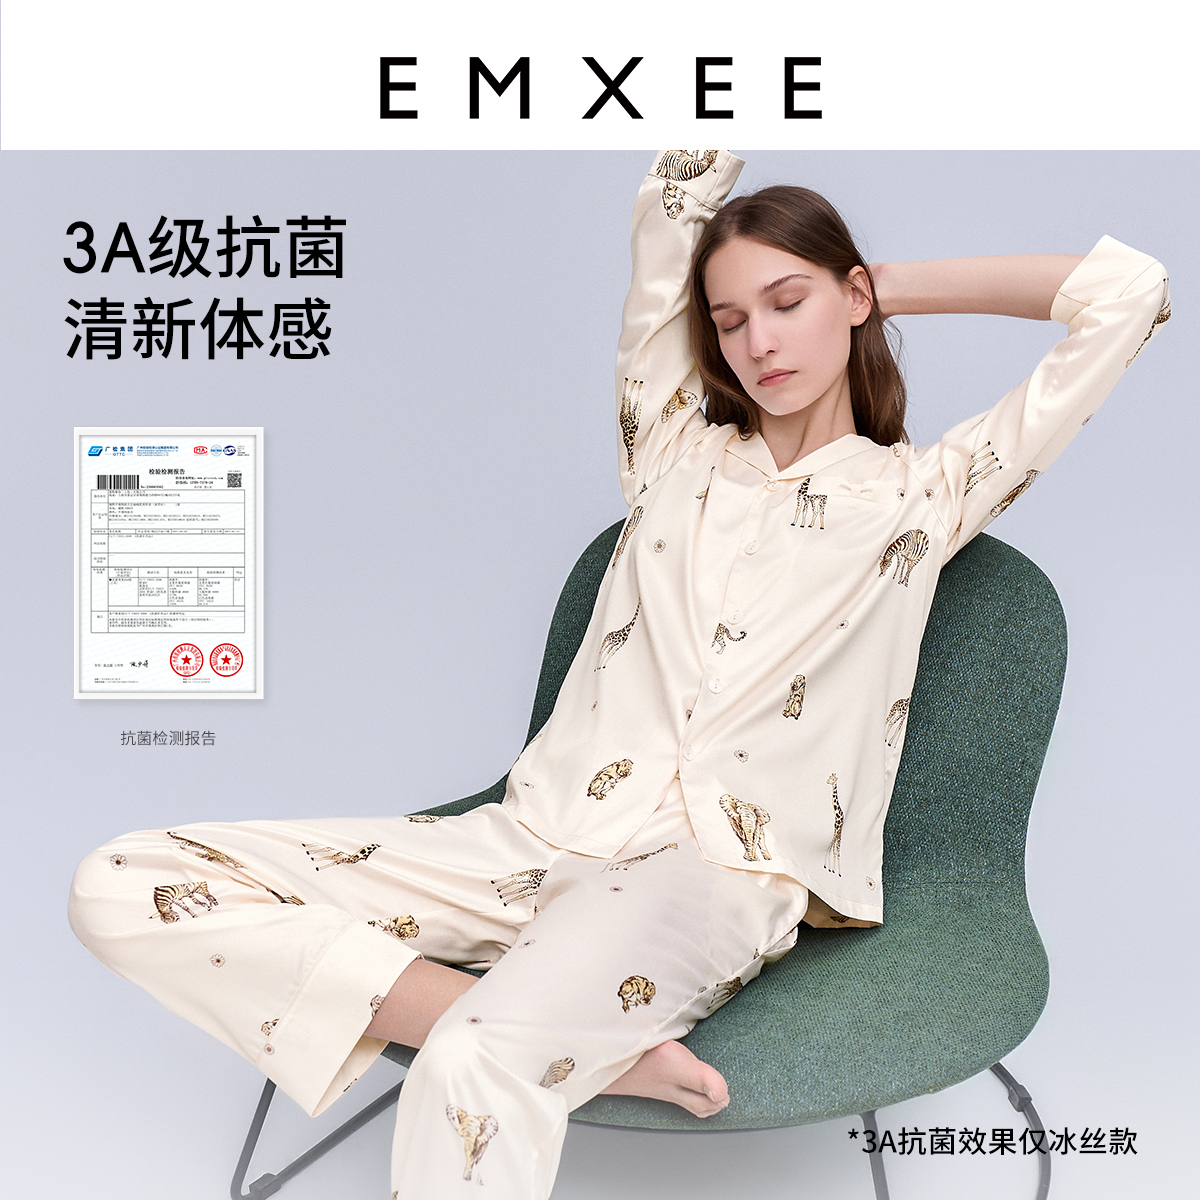 EMXEE 嫚熙 夏季冰丝凉感月子服孕妇睡衣 天丝 169.9元包邮